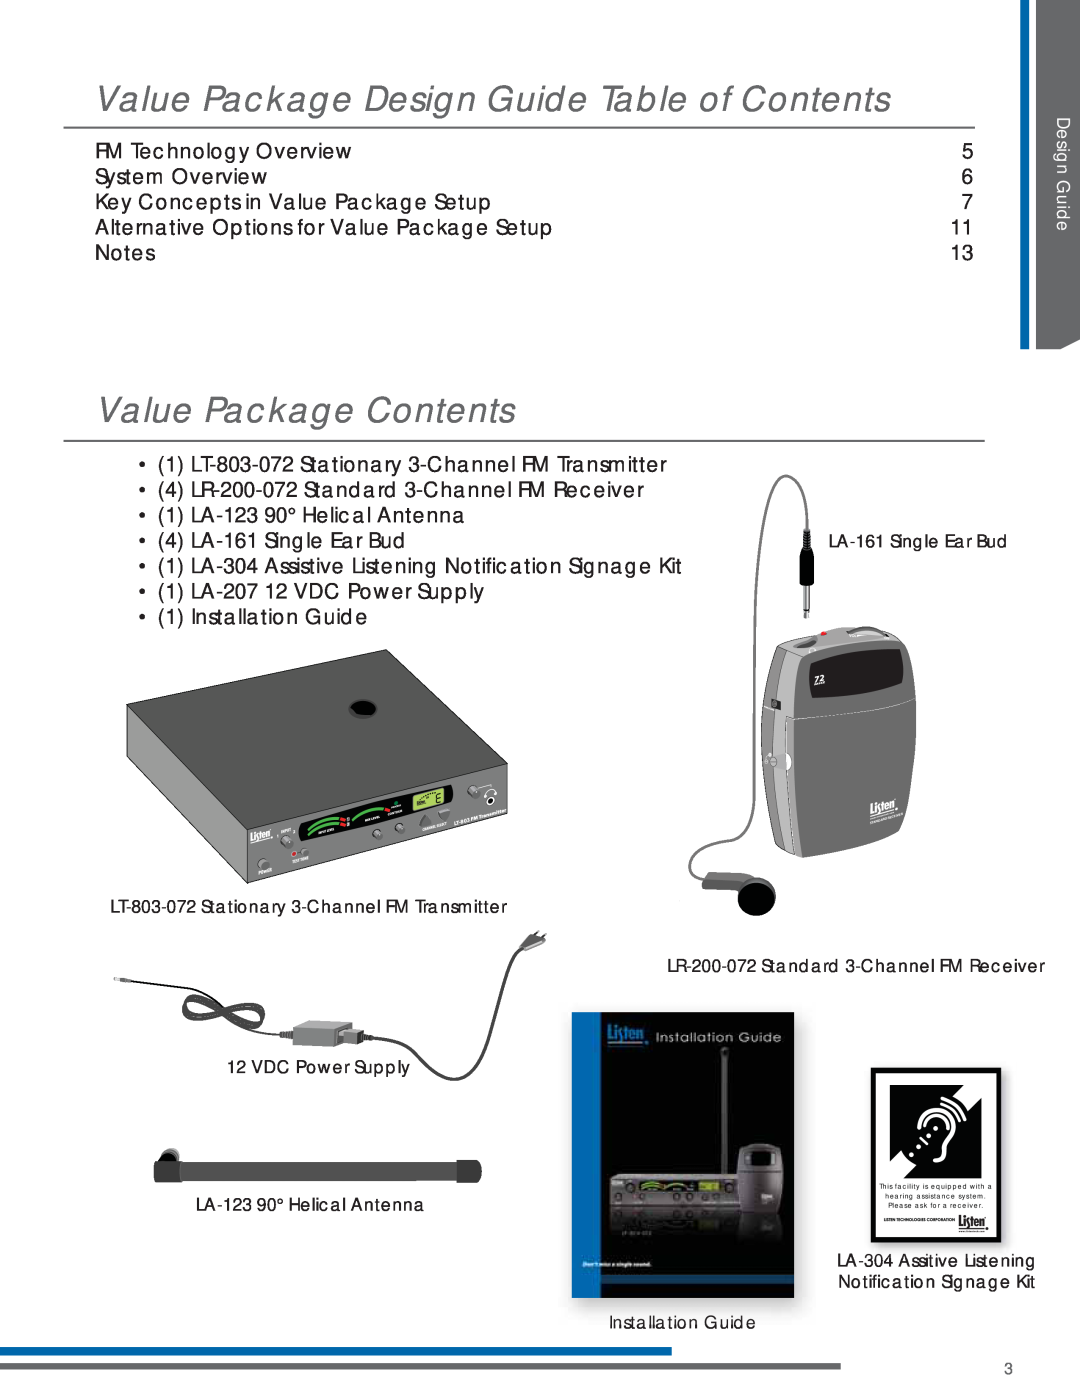 Listen Technologies LA-123 90, LP-3CV-072, LR-200-072 Value Package Design Guide Table of Contents, Value Package Contents 